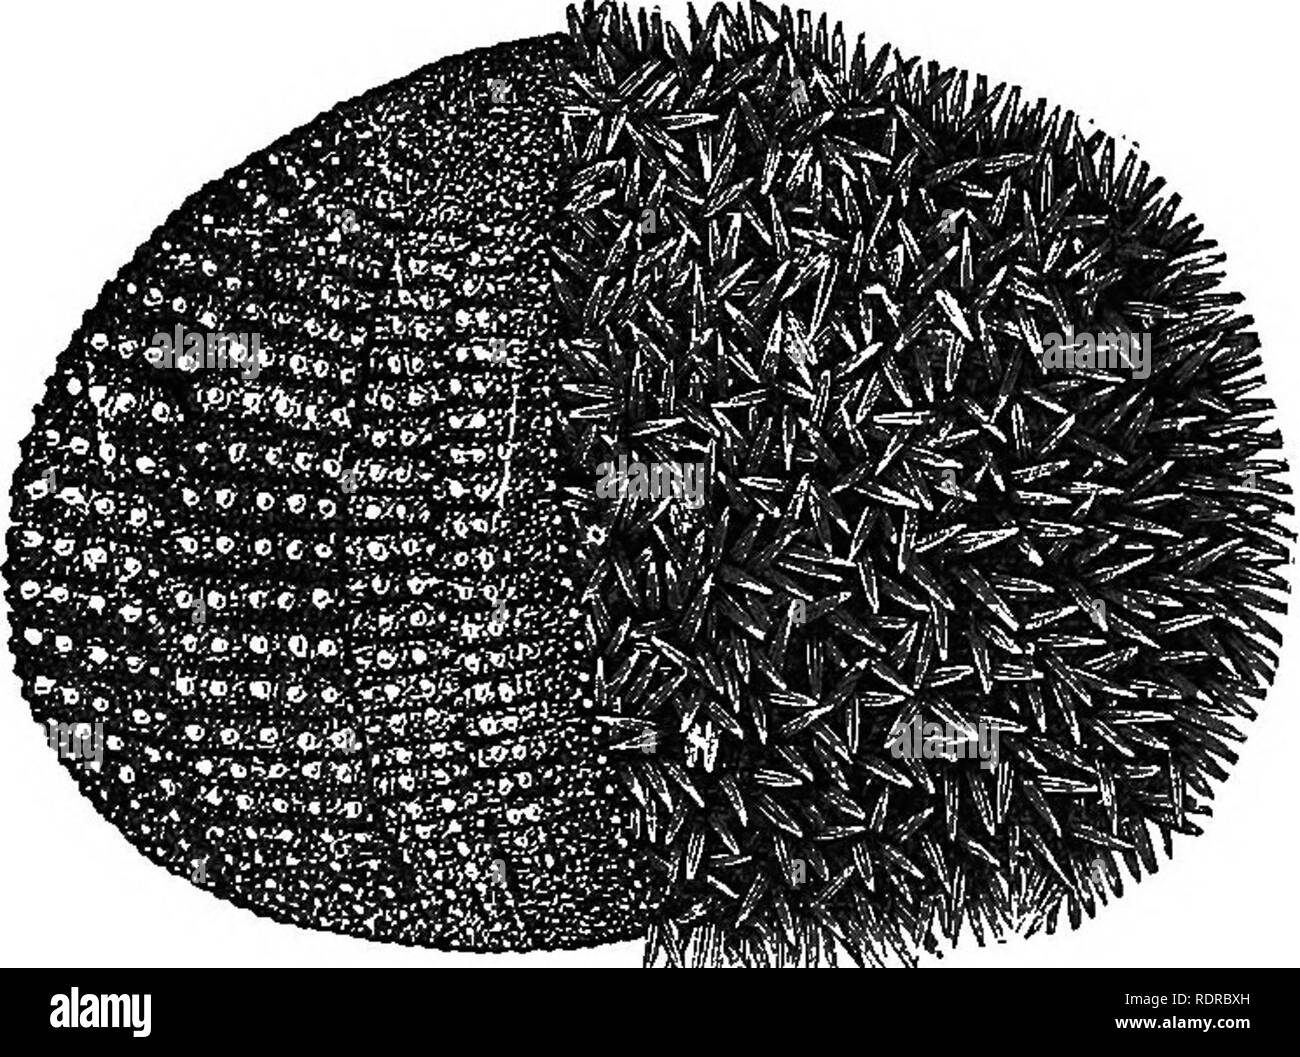 . L'histoire naturelle. Pour l'utilisation d'écoles et les familles. Zoologie. BADIATES. 339 588. La mer Œuf, comme on l'appelle communément, est l'écorce ou le shell d'un ou de l'animal à la peau qui vient de ce que, dépouillé de ses épines. Dans la Fig. 267 vous voyez cet animal, appelé. Fig. 26T.-de l'EUÉM Echinus, ou Sea Urchin ; sur le côté droit couverts d'épines ; à gauche les épines retirées. • Echinus, avec les épines retirées de la moitié. Ces épines sont, curieusement, s'articulant avec le shell. TJiere est une projection de la coquille à la base de chaque colonne, sur laquelle la colonne vertébrale Avorks avec sa tasse-comme l'empreinte, rendant un Banque D'Images